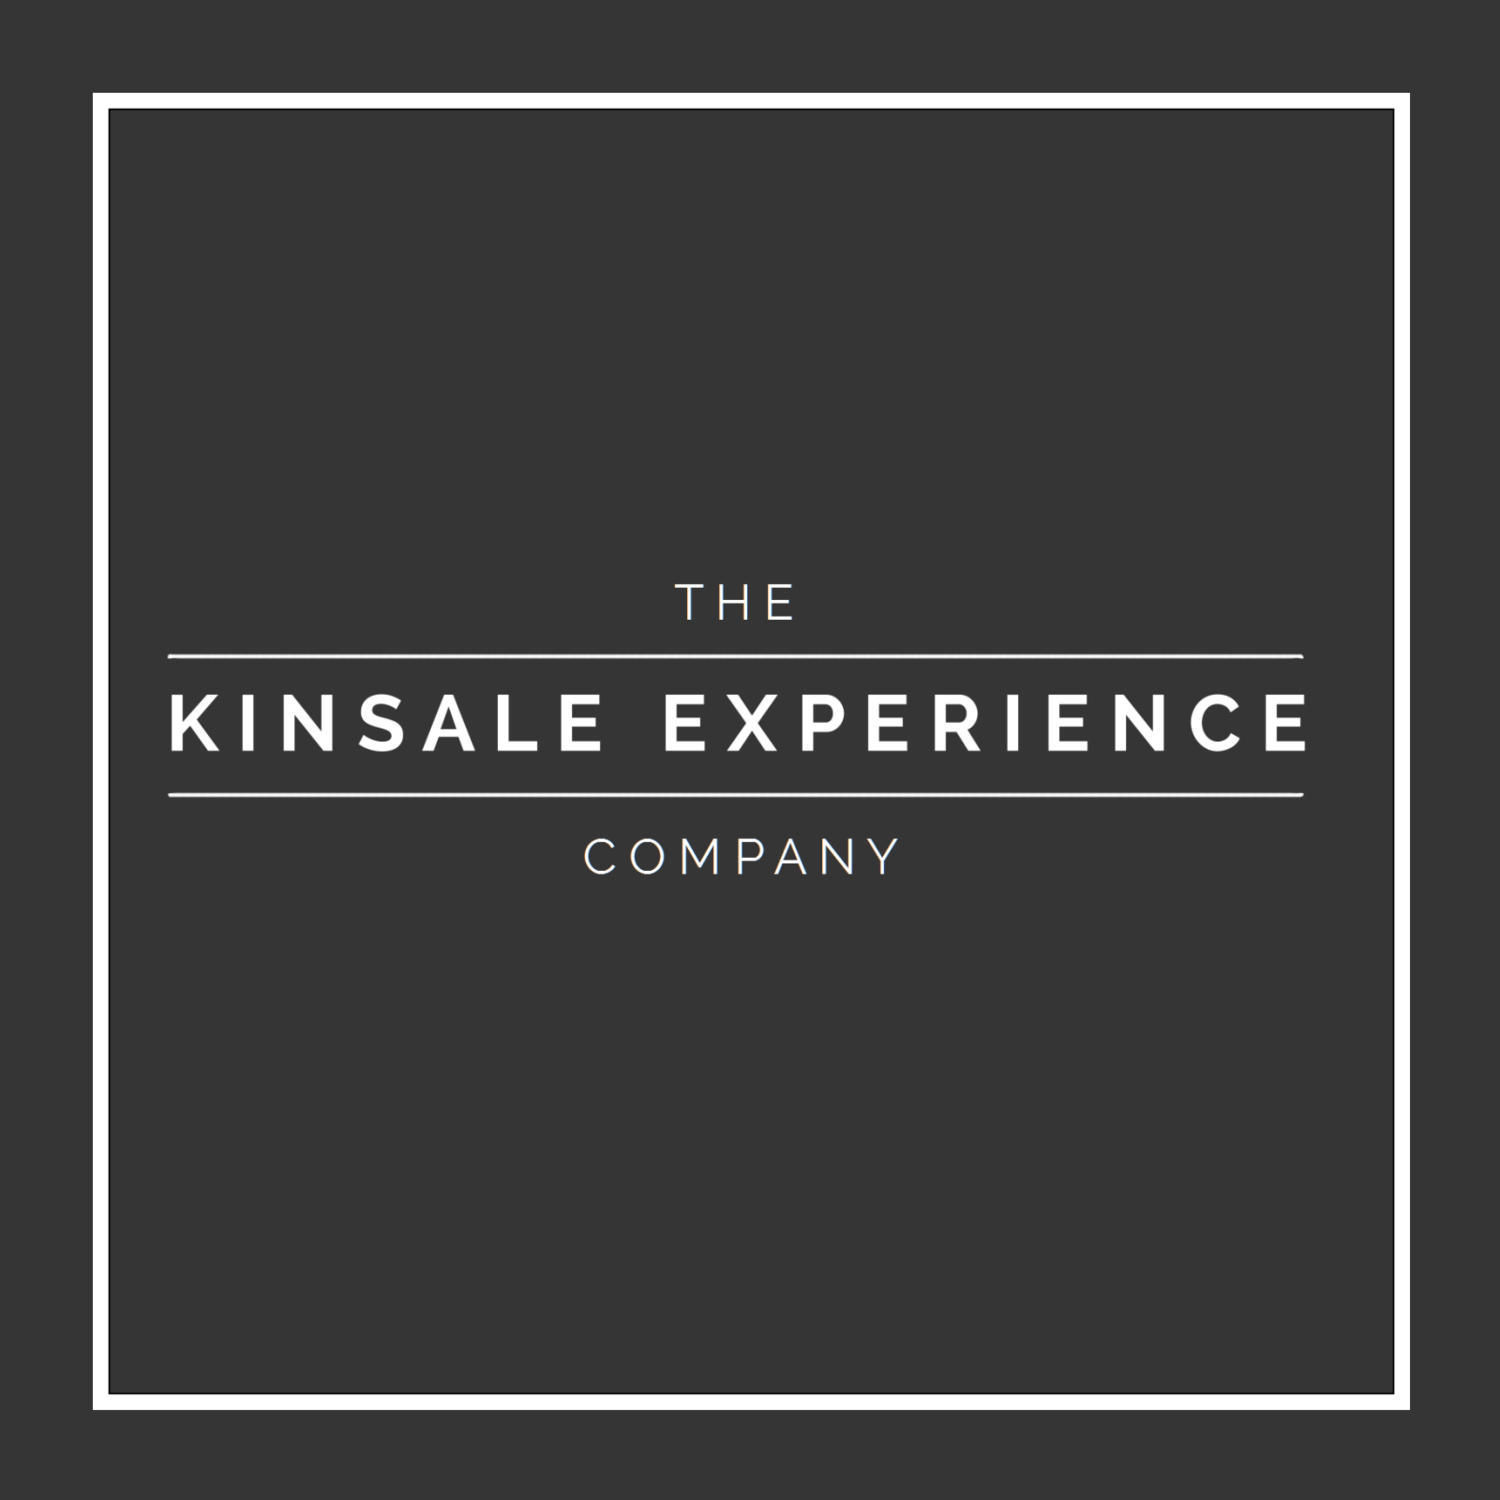 The Kinsale Experience Company